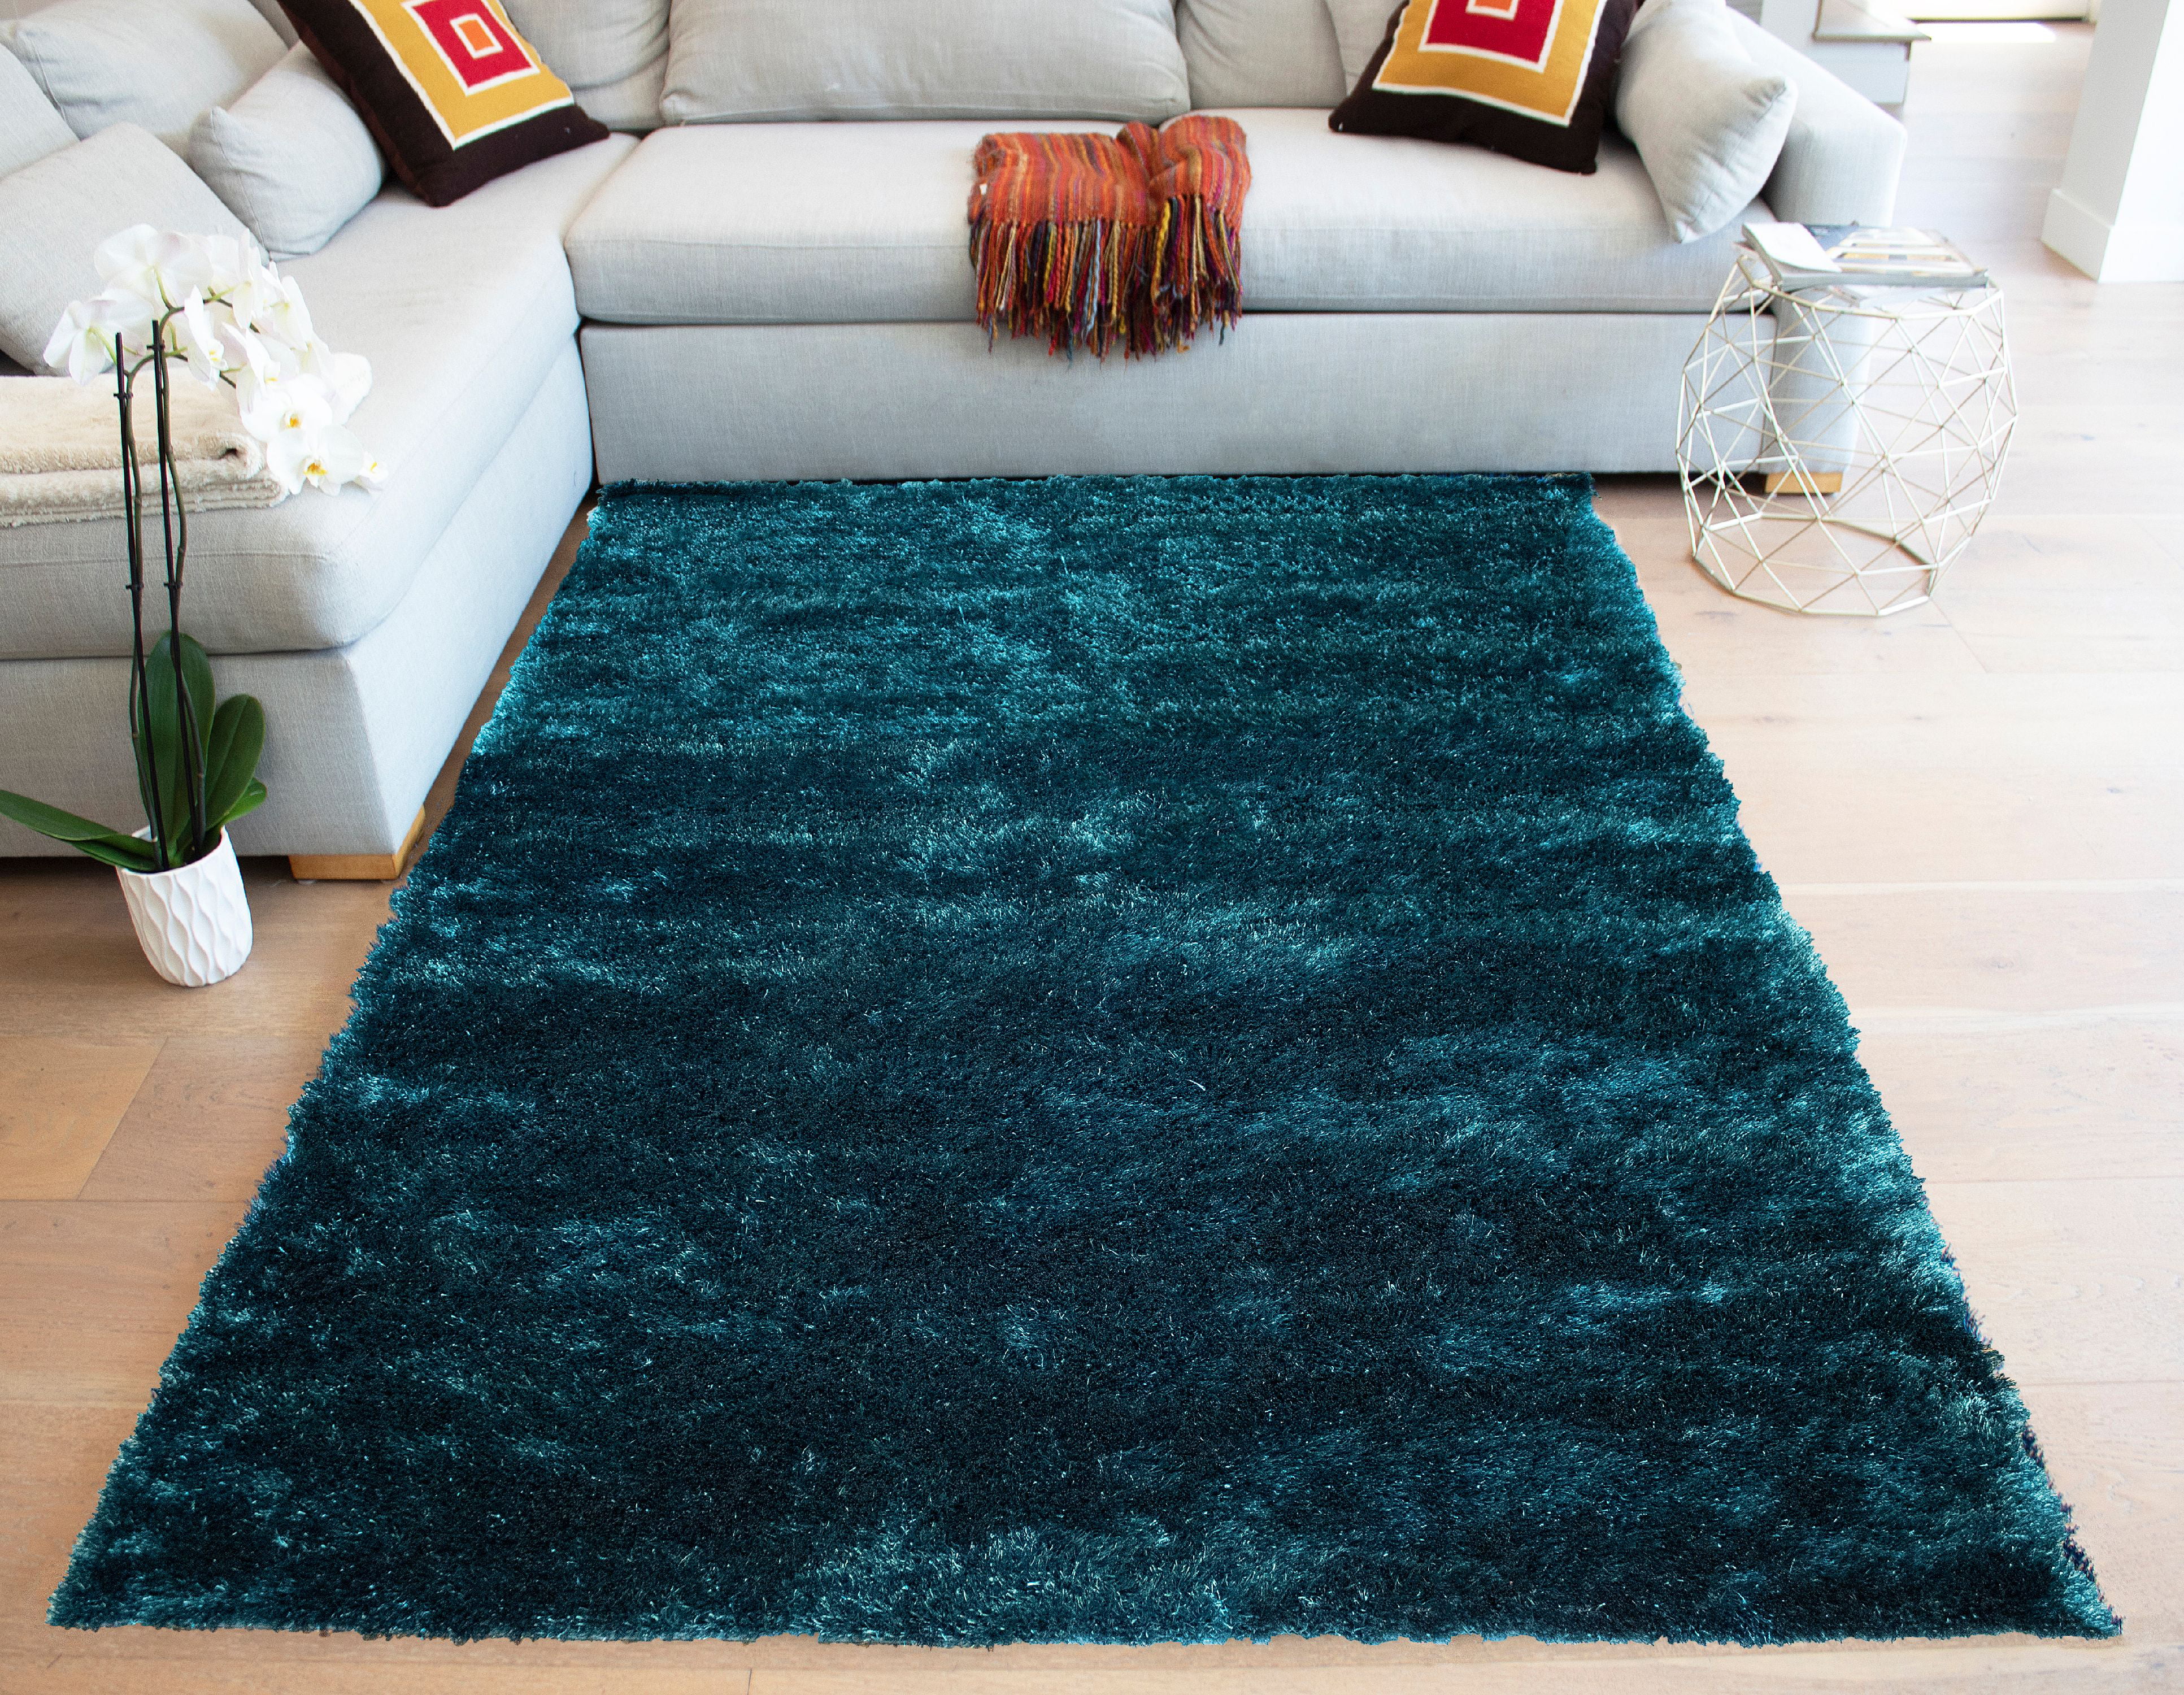 plush living room rugs